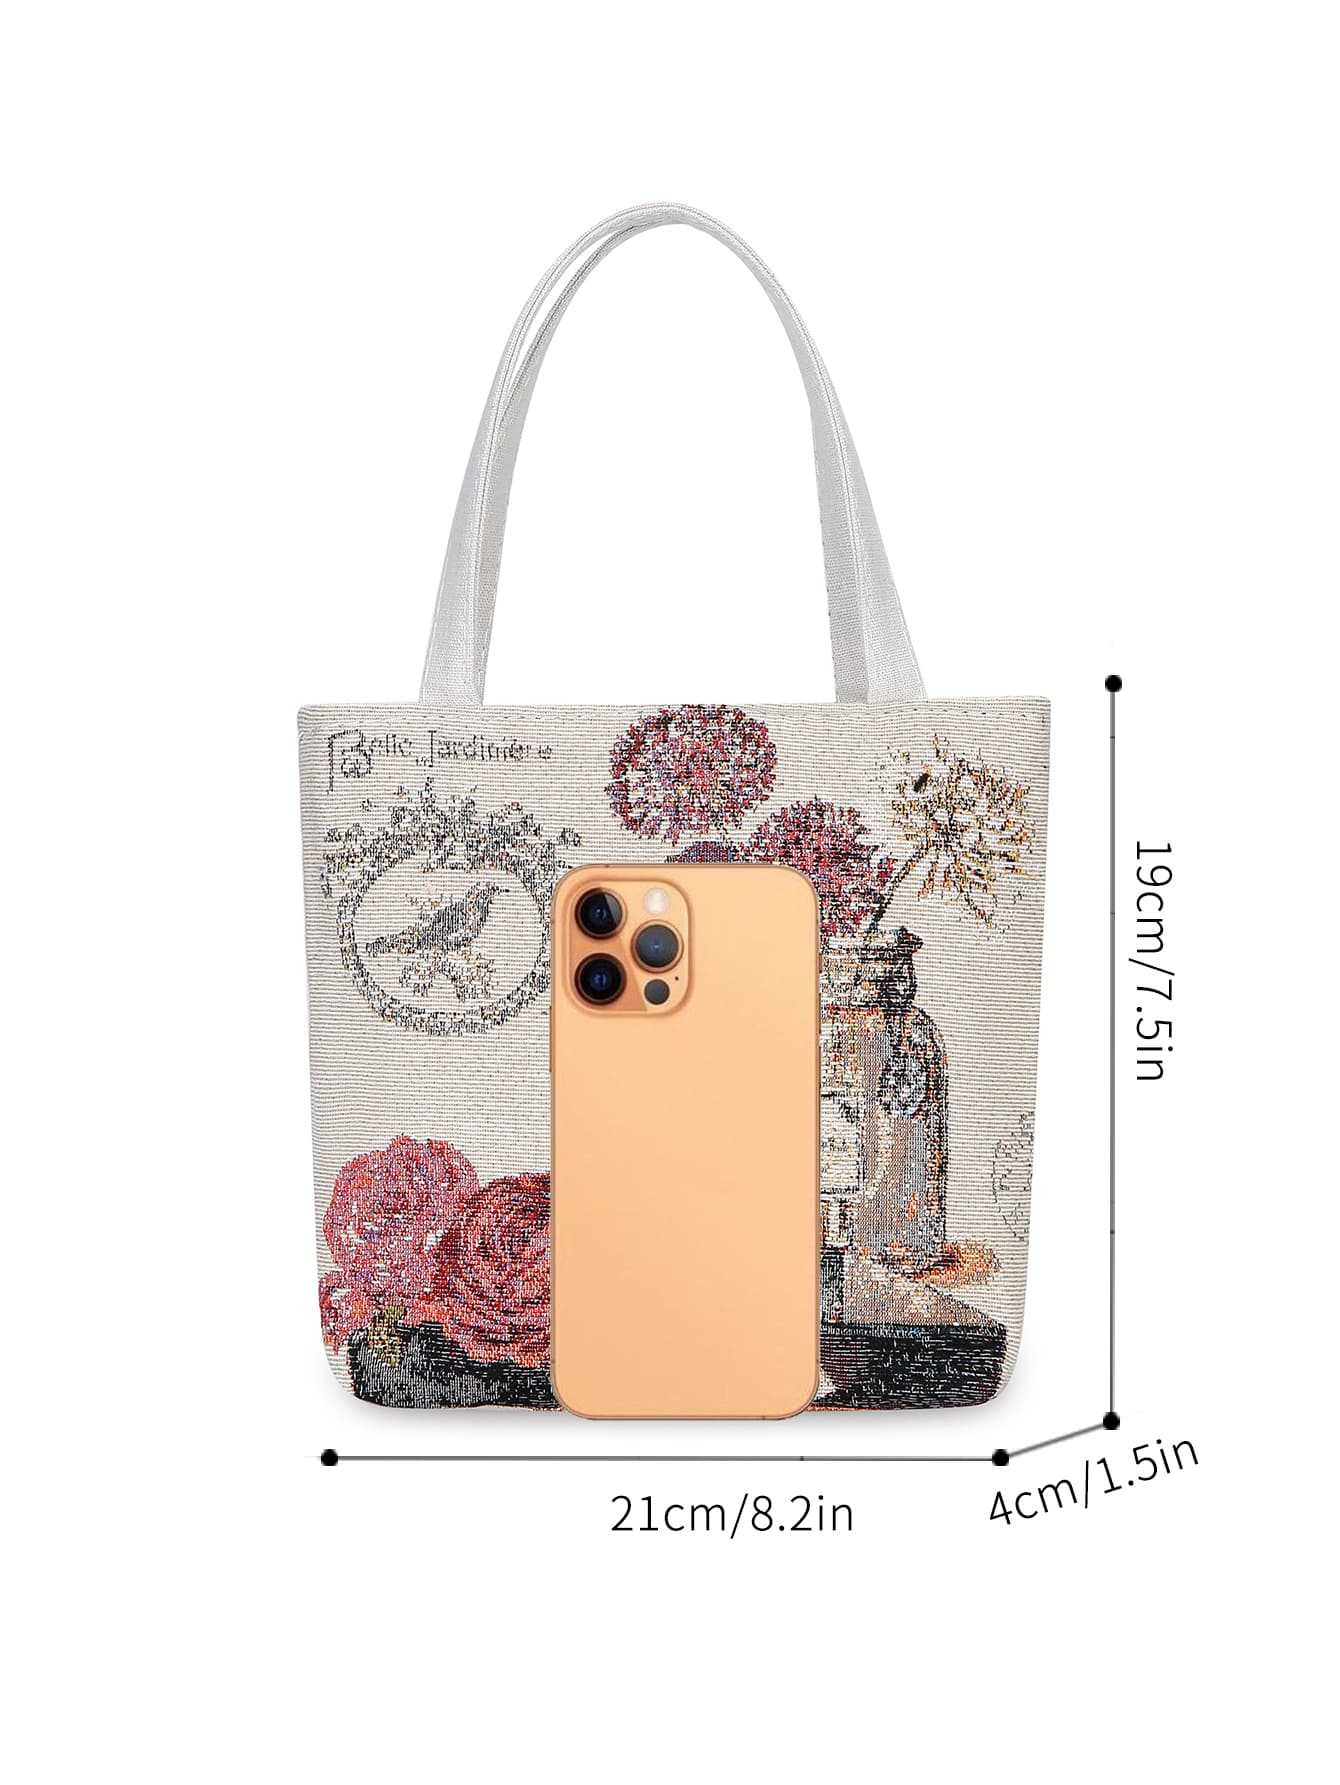 Квадратная сумка с рисунком бабочки Маленькая сумка через плечо с двойной ручкой, многоцветный сумка шоппер с цветочным узором синий